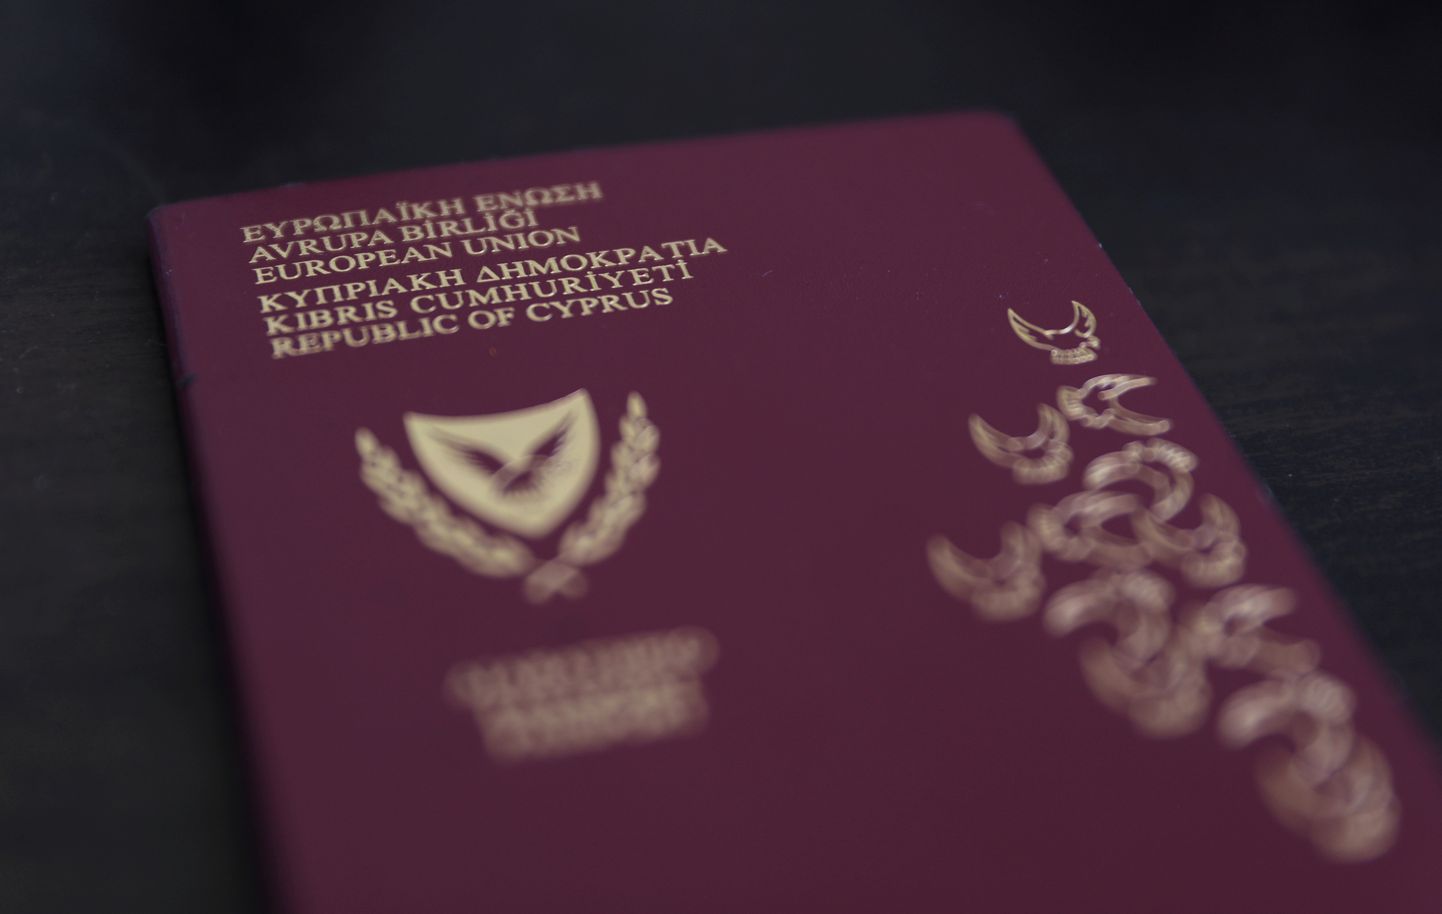 Küprose pass.